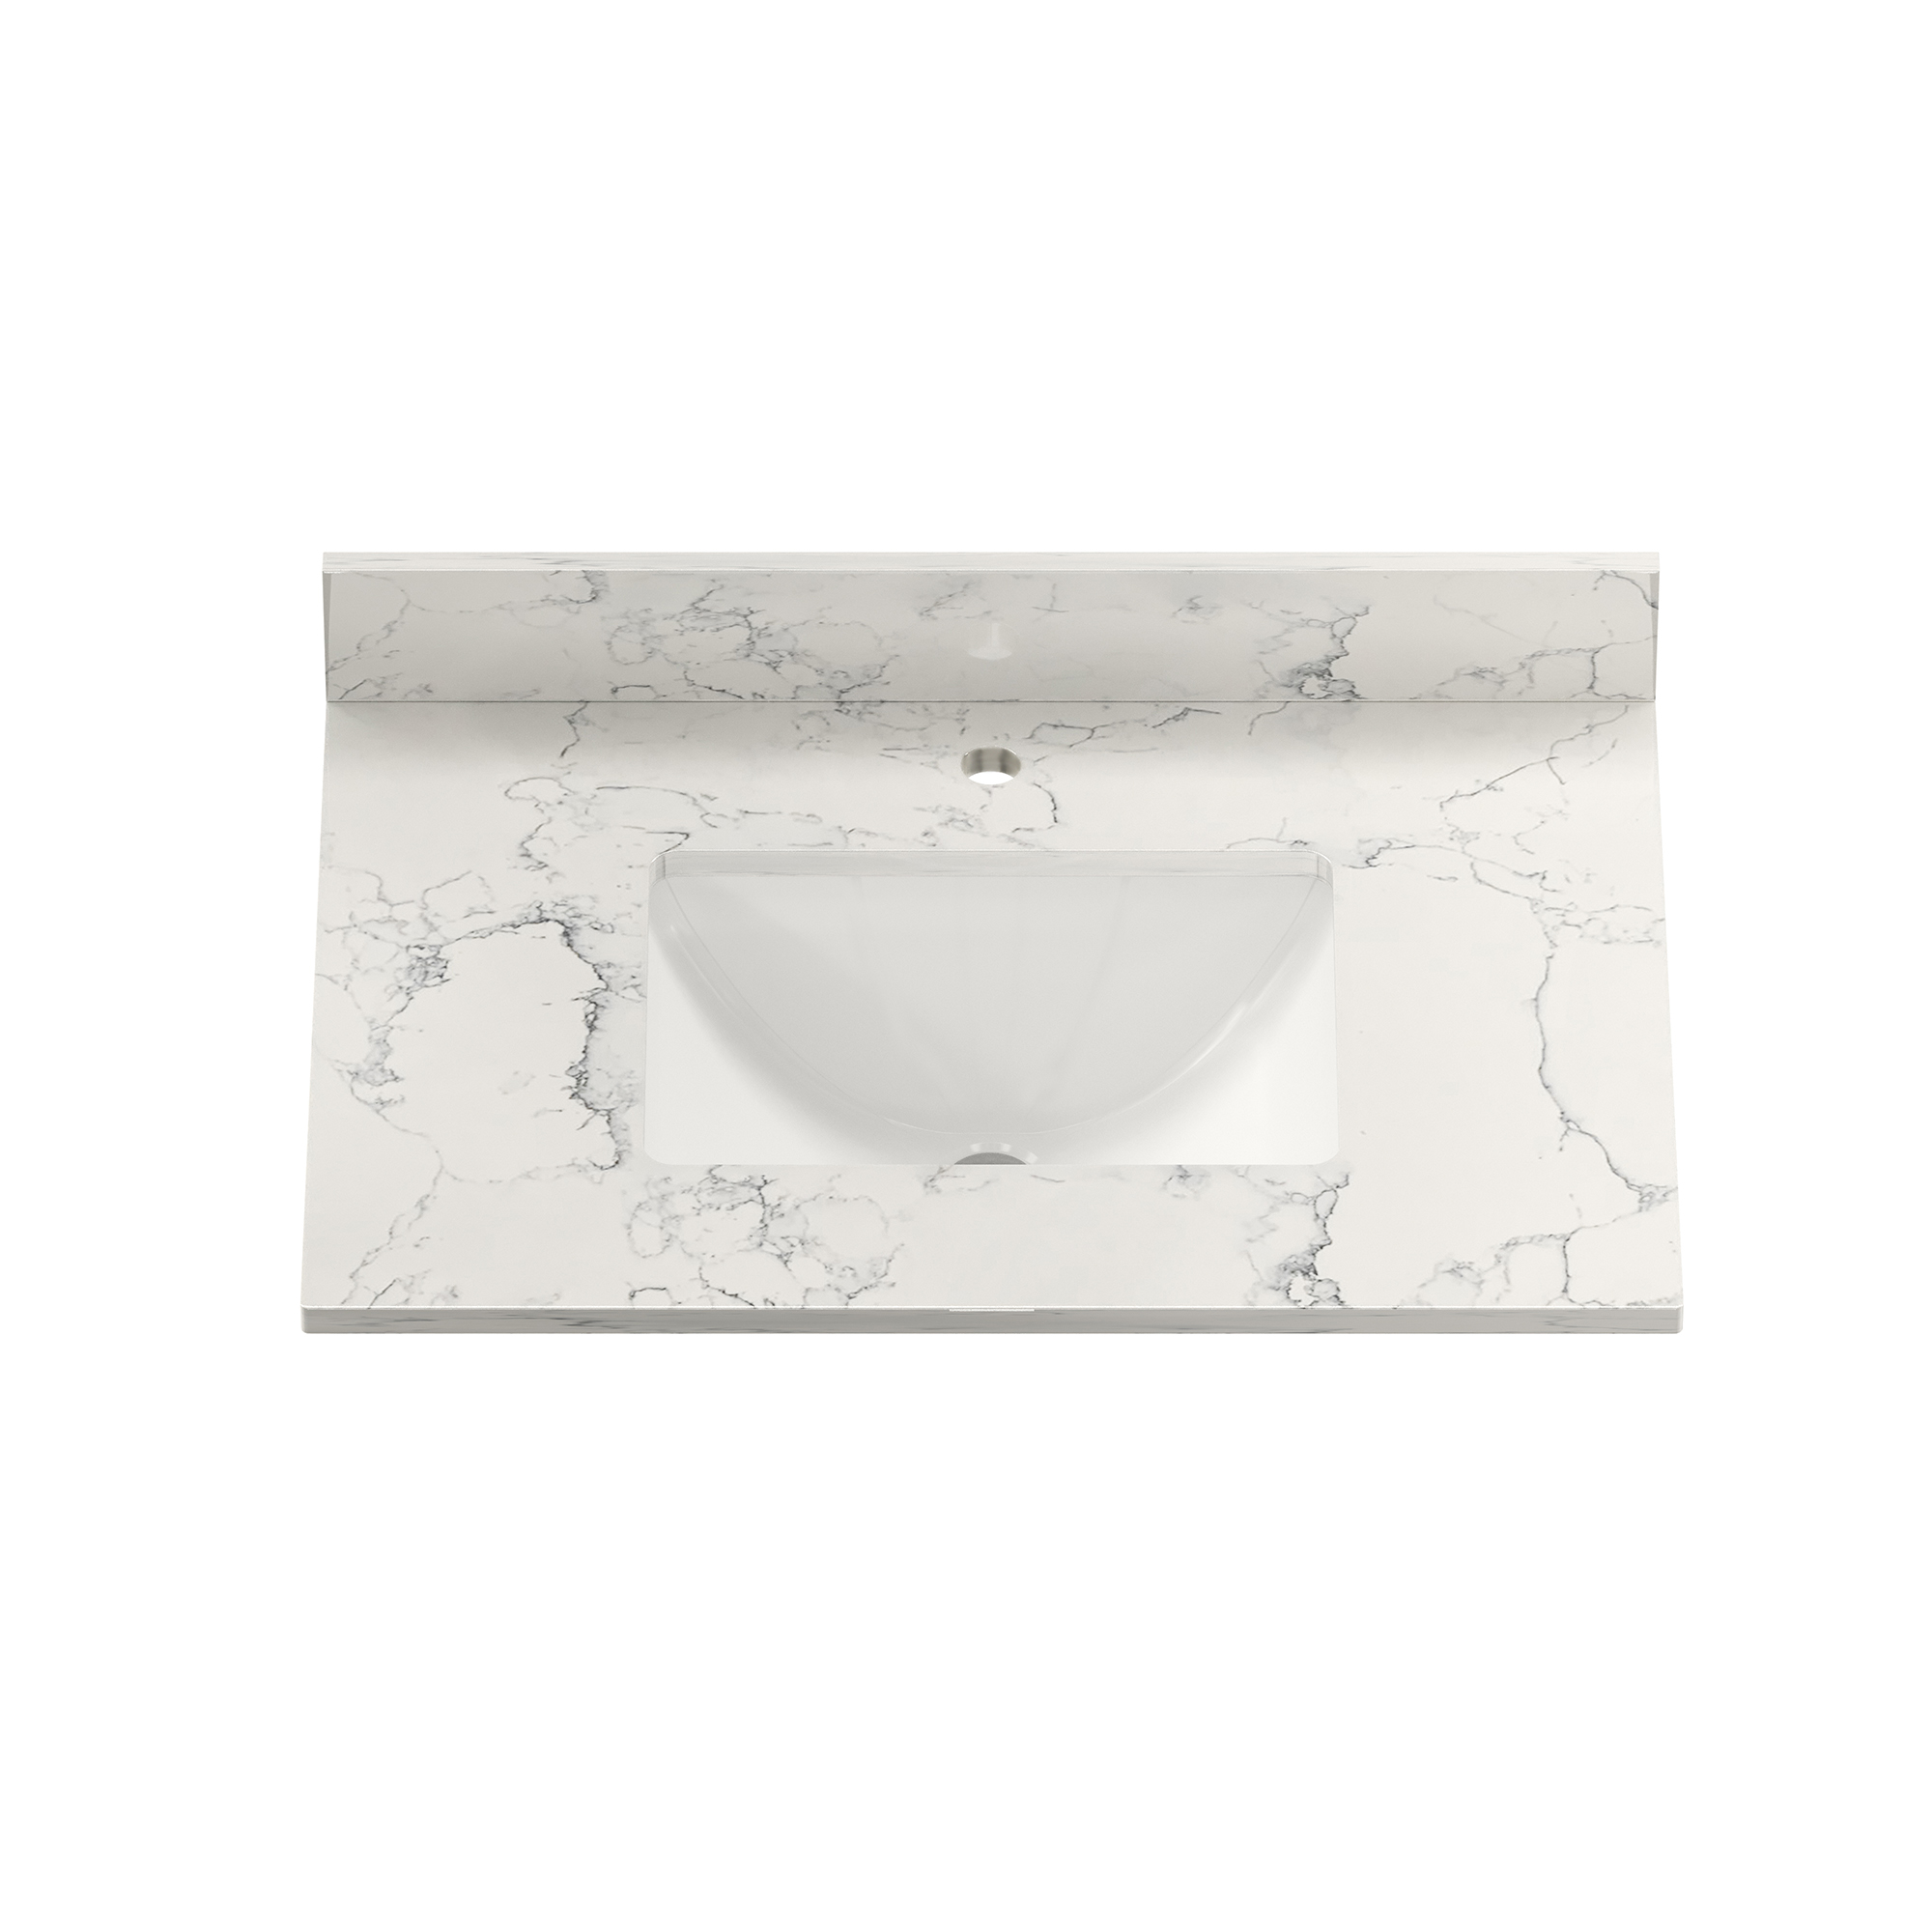 CASAINC 31" Carrara Jade/White Marble Single Sink Bathroom Vanity Top with 100mm High Backsplash, CUPC Certified